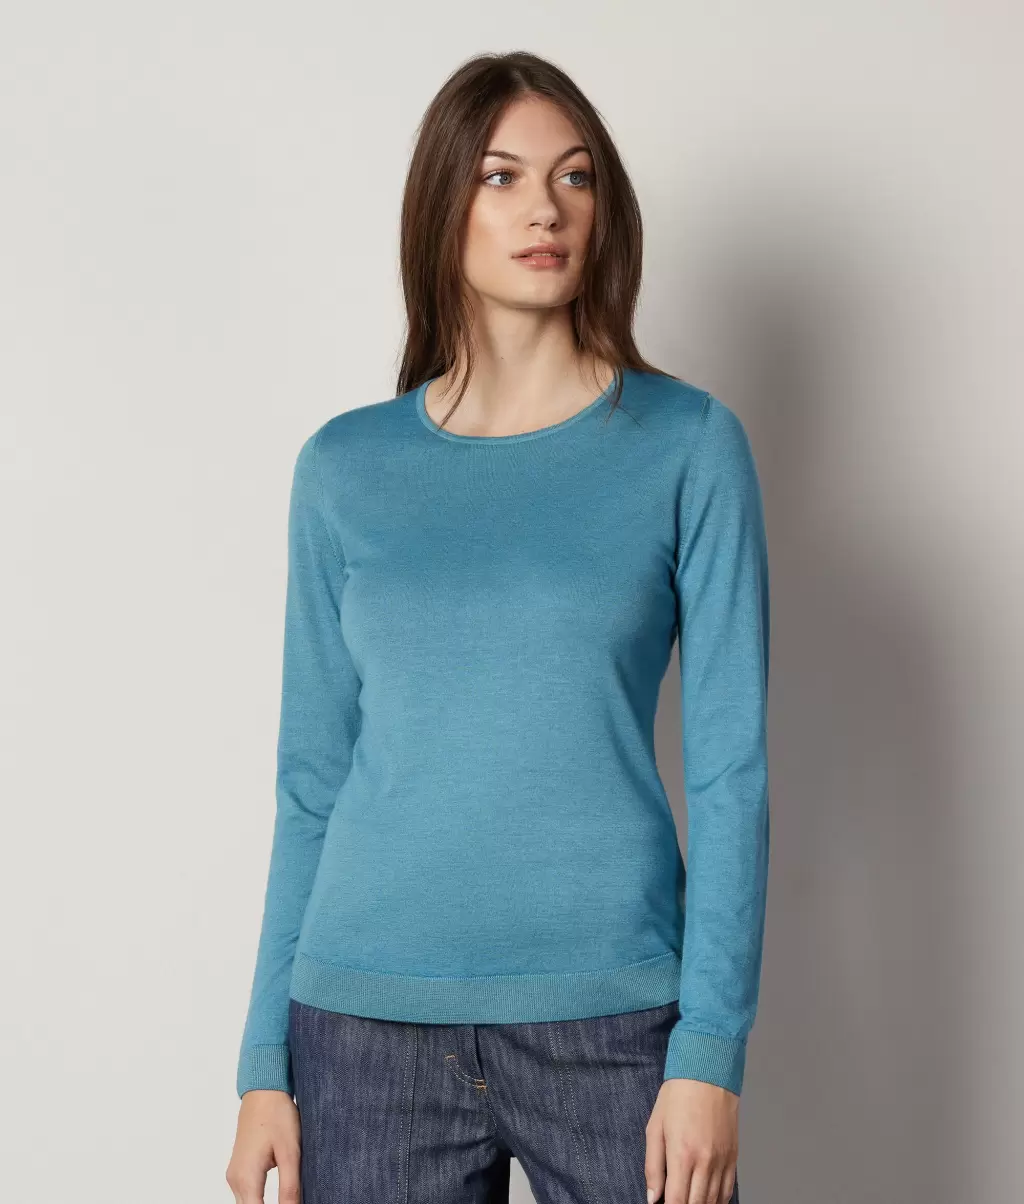 Swetry Z Okrągłym Dekoltem Blue Kobieta Pulower Z Kaszmiru Ultrafine Falconeri - 1